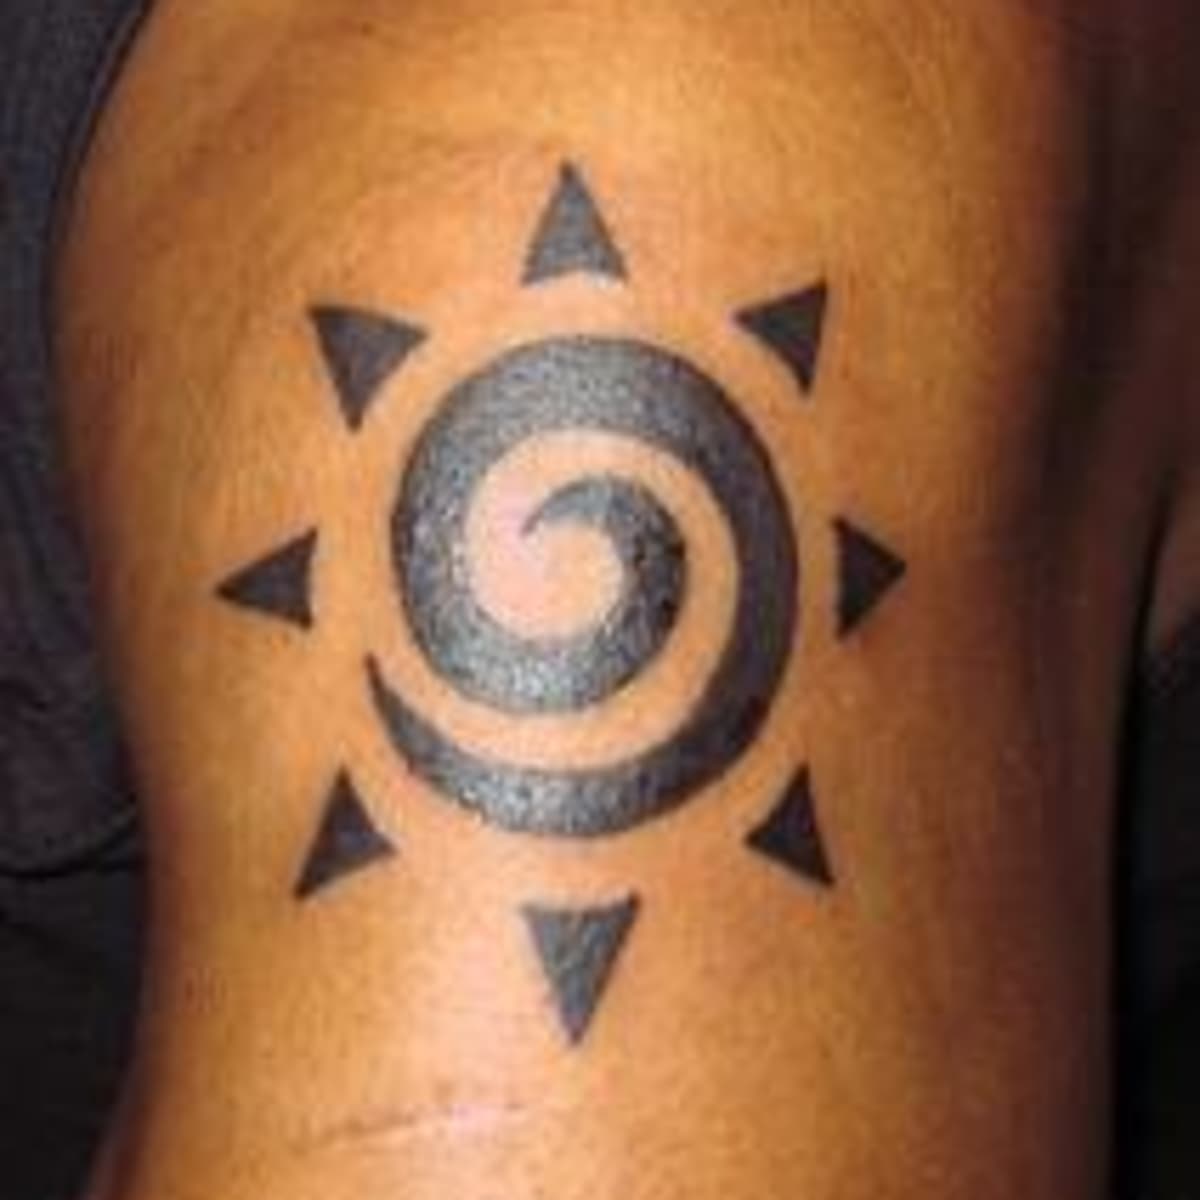 tribal tattoos meaning faith